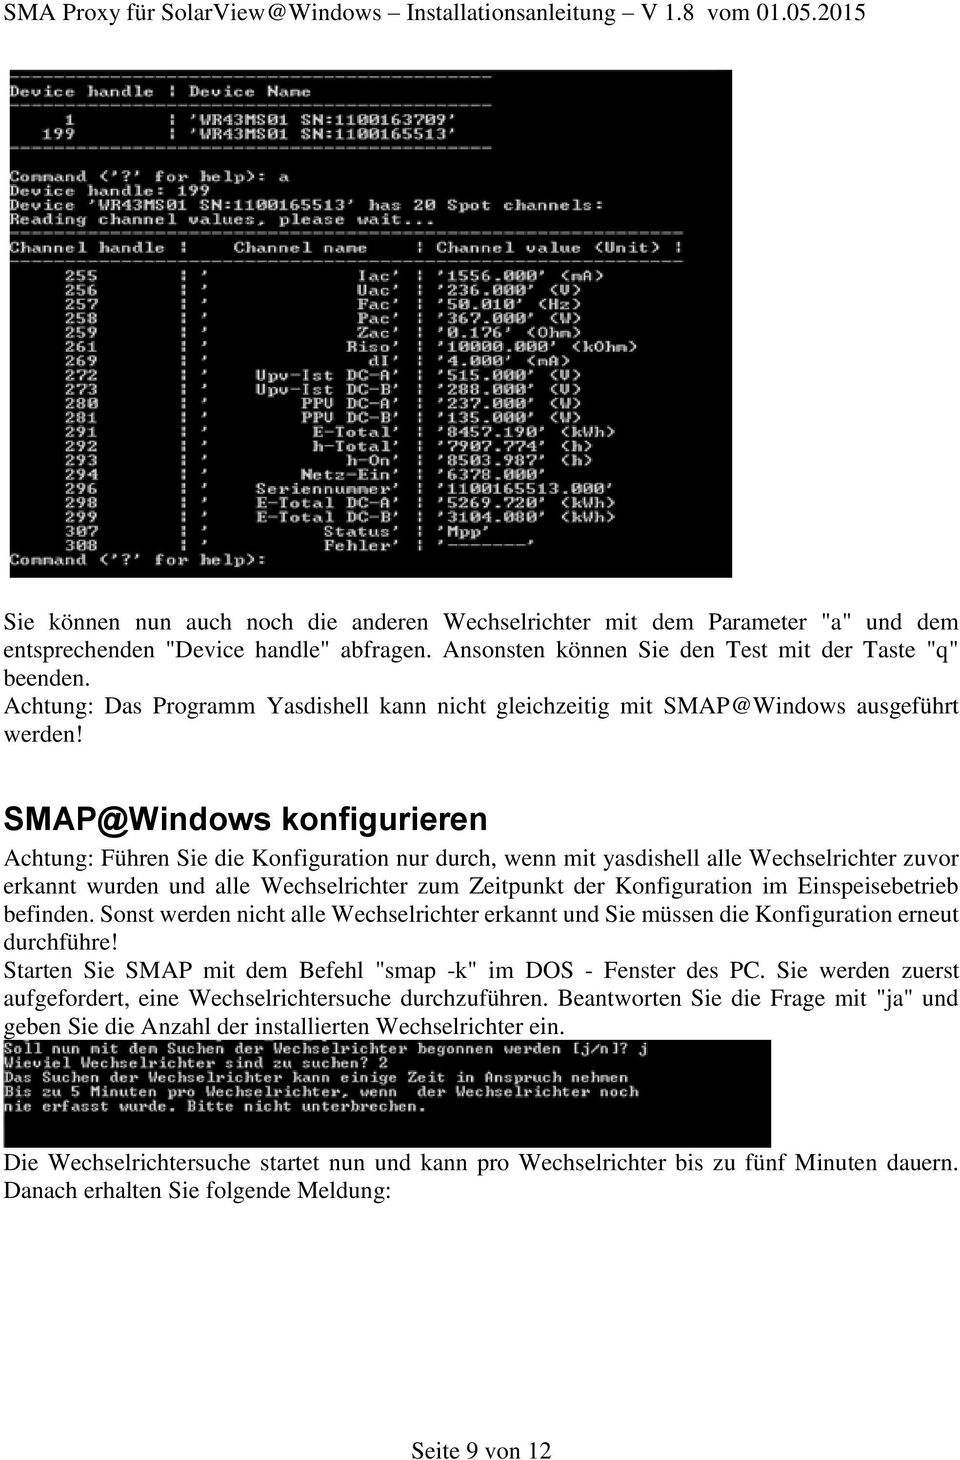 SMAP@Windows konfigurieren Achtung: Führen Sie die Konfiguration nur durch, wenn mit yasdishell alle Wechselrichter zuvor erkannt wurden und alle Wechselrichter zum Zeitpunkt der Konfiguration im